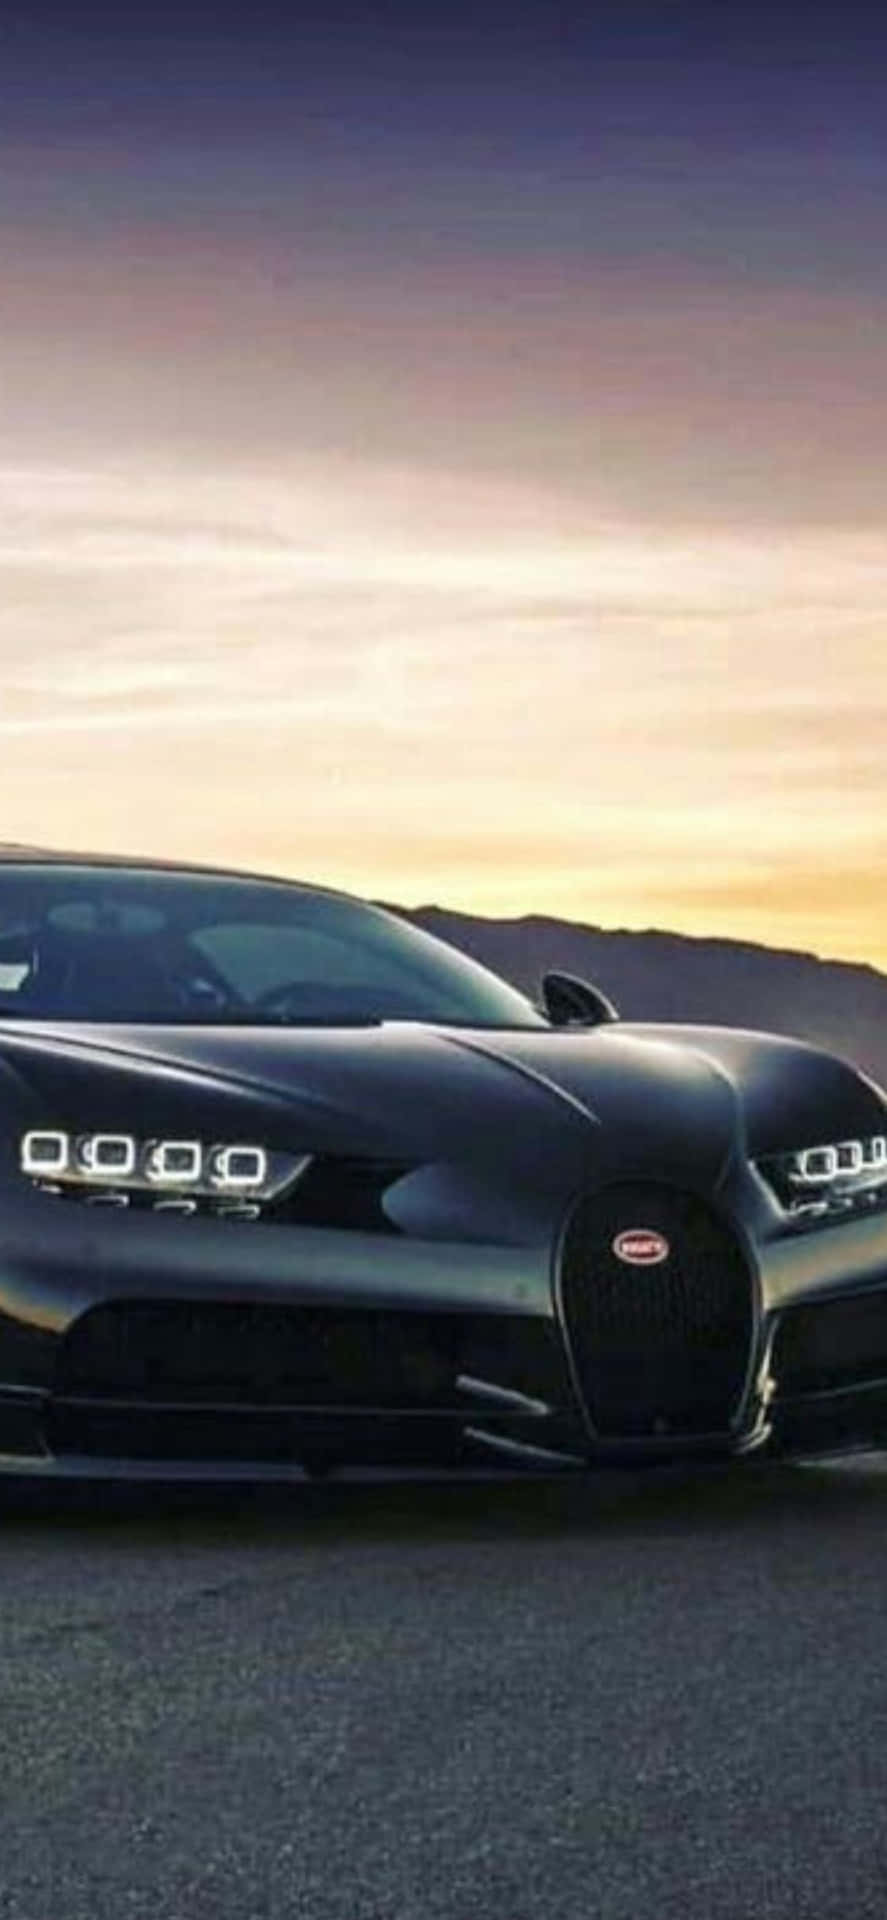 Iphonexs Bugatti: Den Ultimata Kombinationen Av Lyx Och Teknologi.